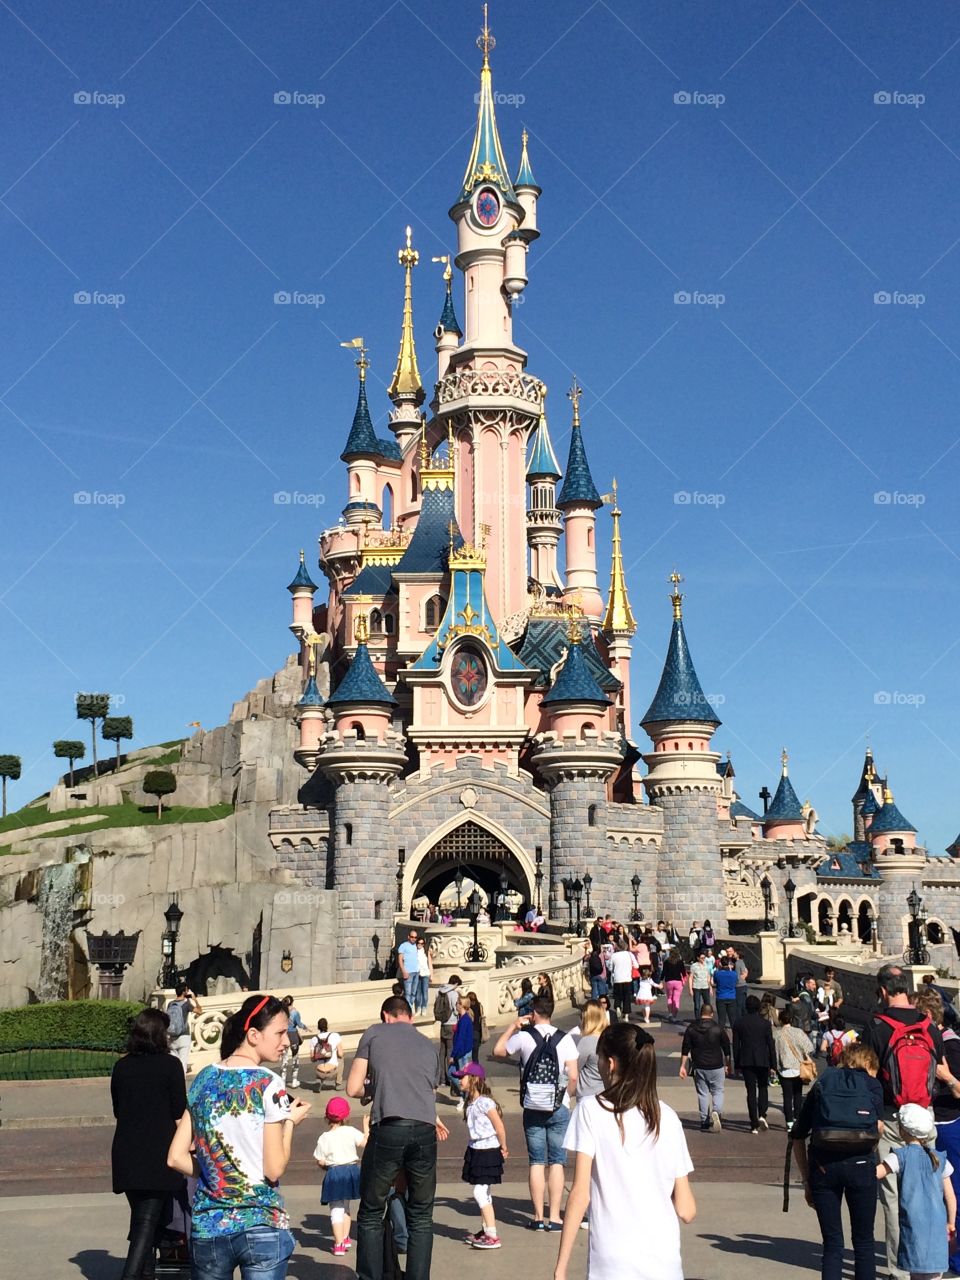 Sleeping Beauty Castle Disney. Sleeping Beauties castle- Disneyland Paris 